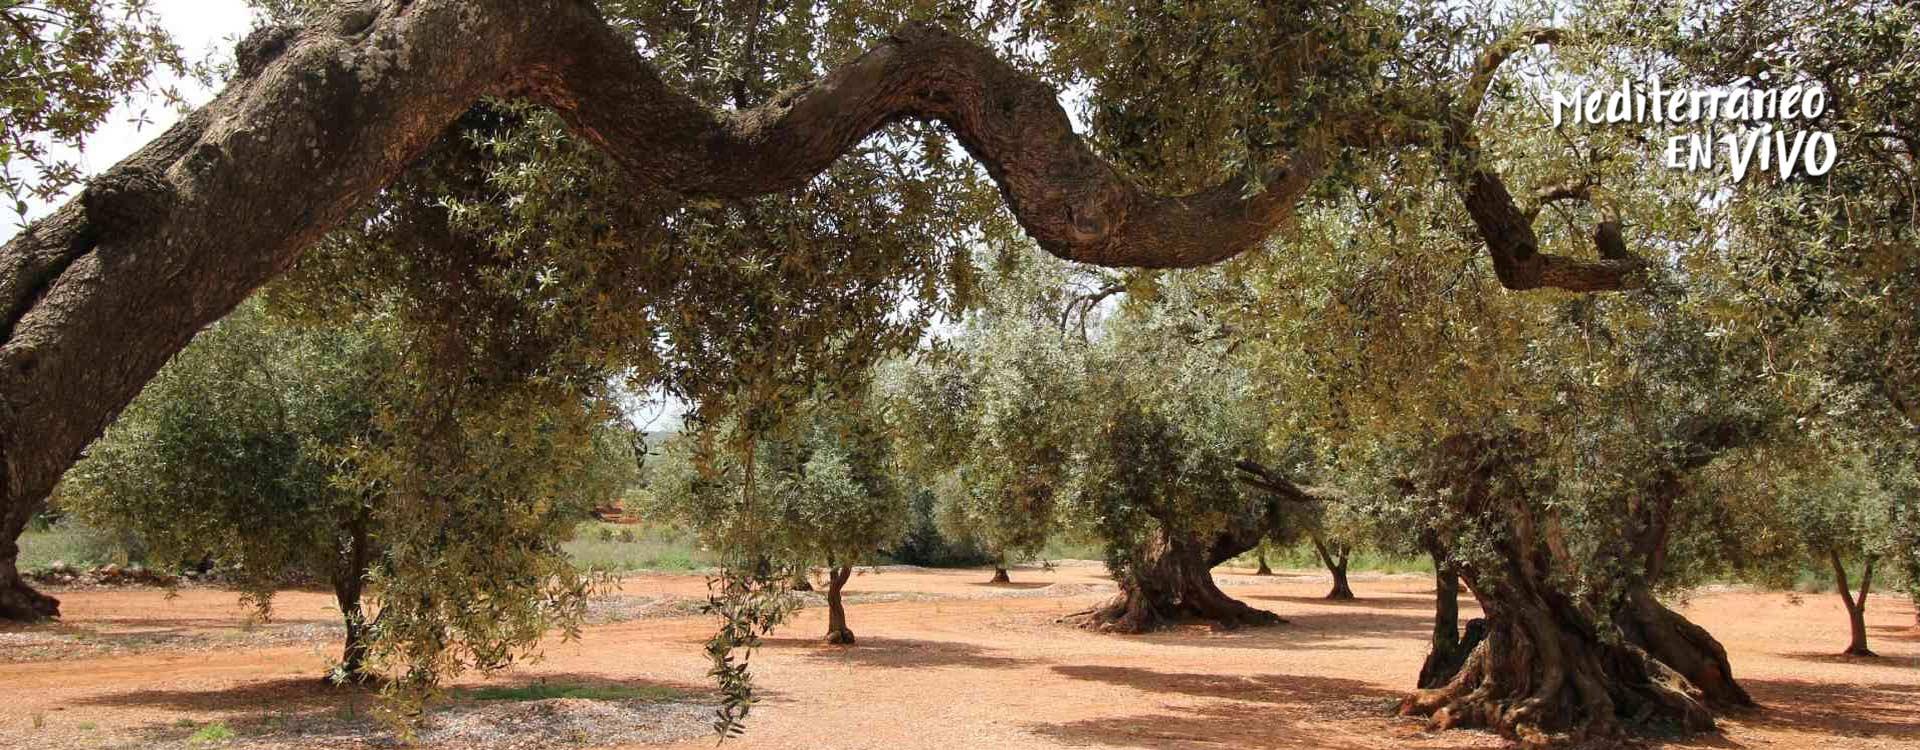 Imatge d'oliveres mil·lenàries de Canet lo Roig	